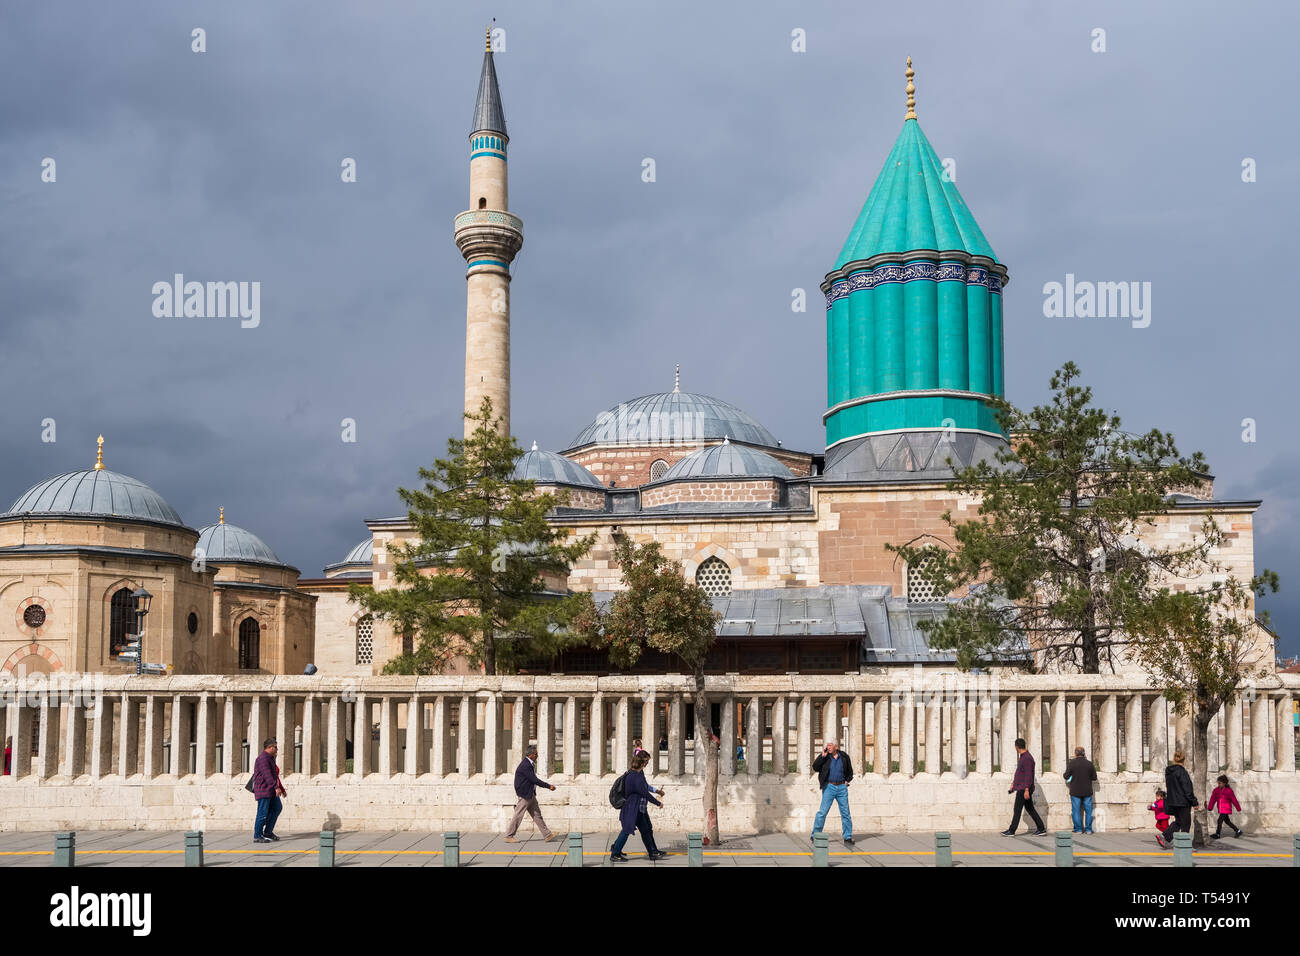 Konya, Turquie - 21 octobre 2018 : peuple turc non identifiés à pied près de la mosquée musée de Mevlana à Konya, Turquie. Mevlana Celaleddin-i Rumi est un suf Banque D'Images